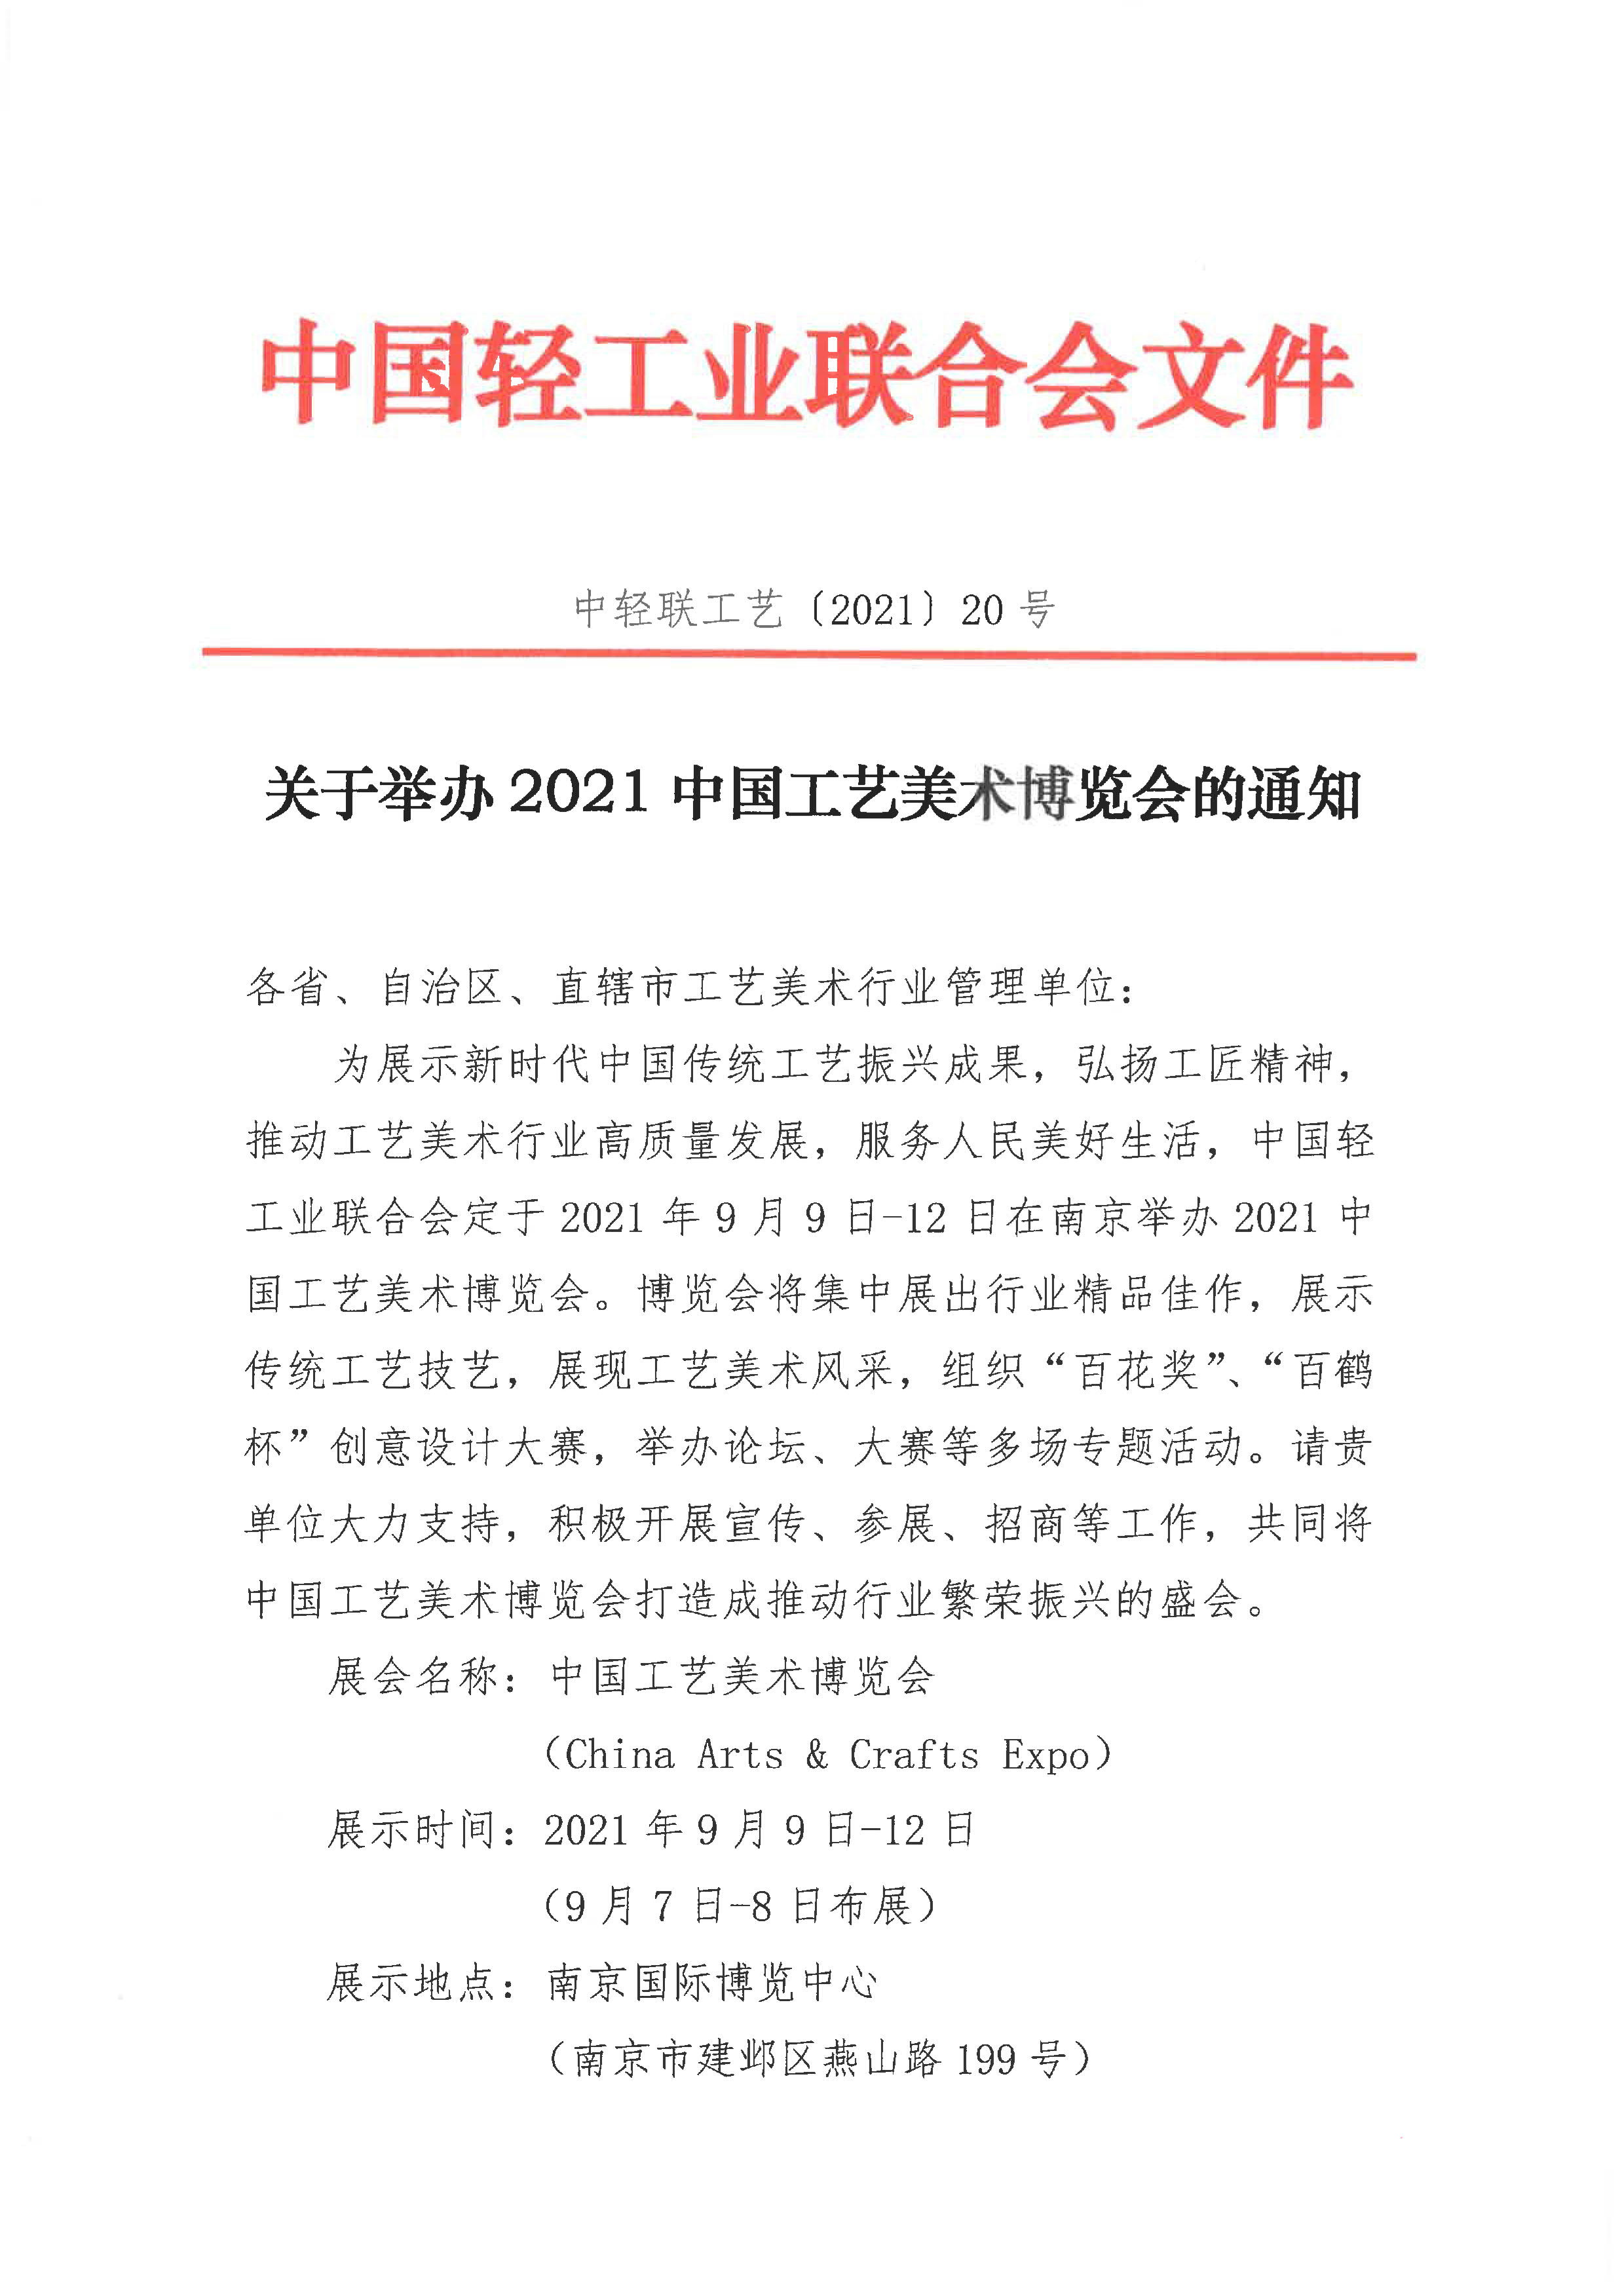 关于举办2021中国工艺美术博览会的通知（单位）_1.jpg